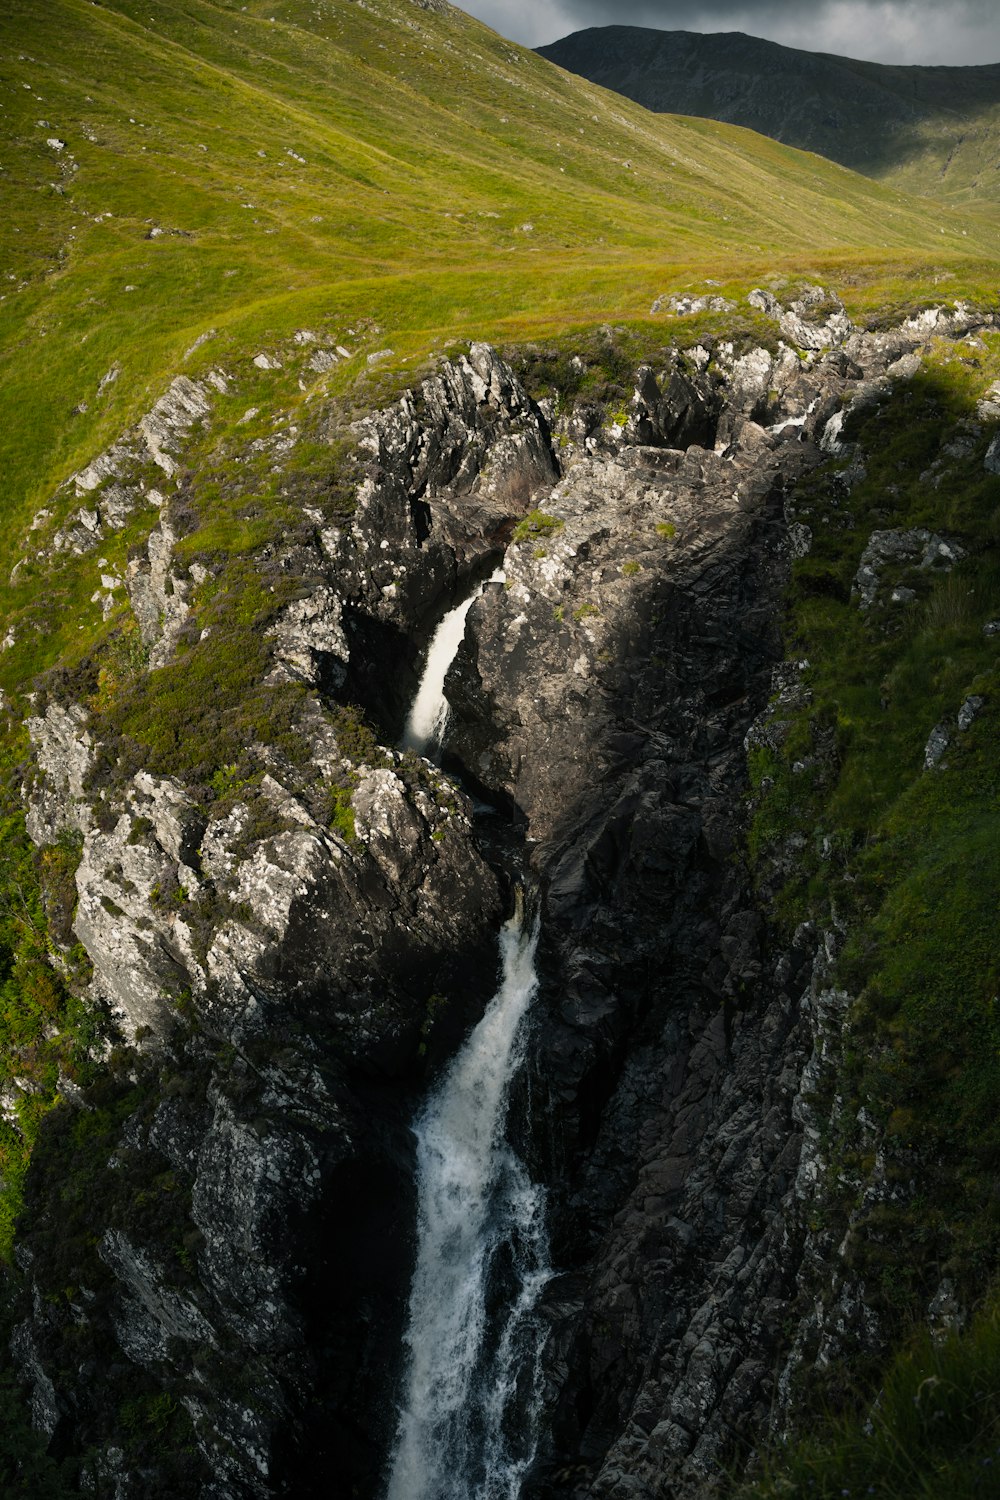 a small waterfall running through a lush green hillside